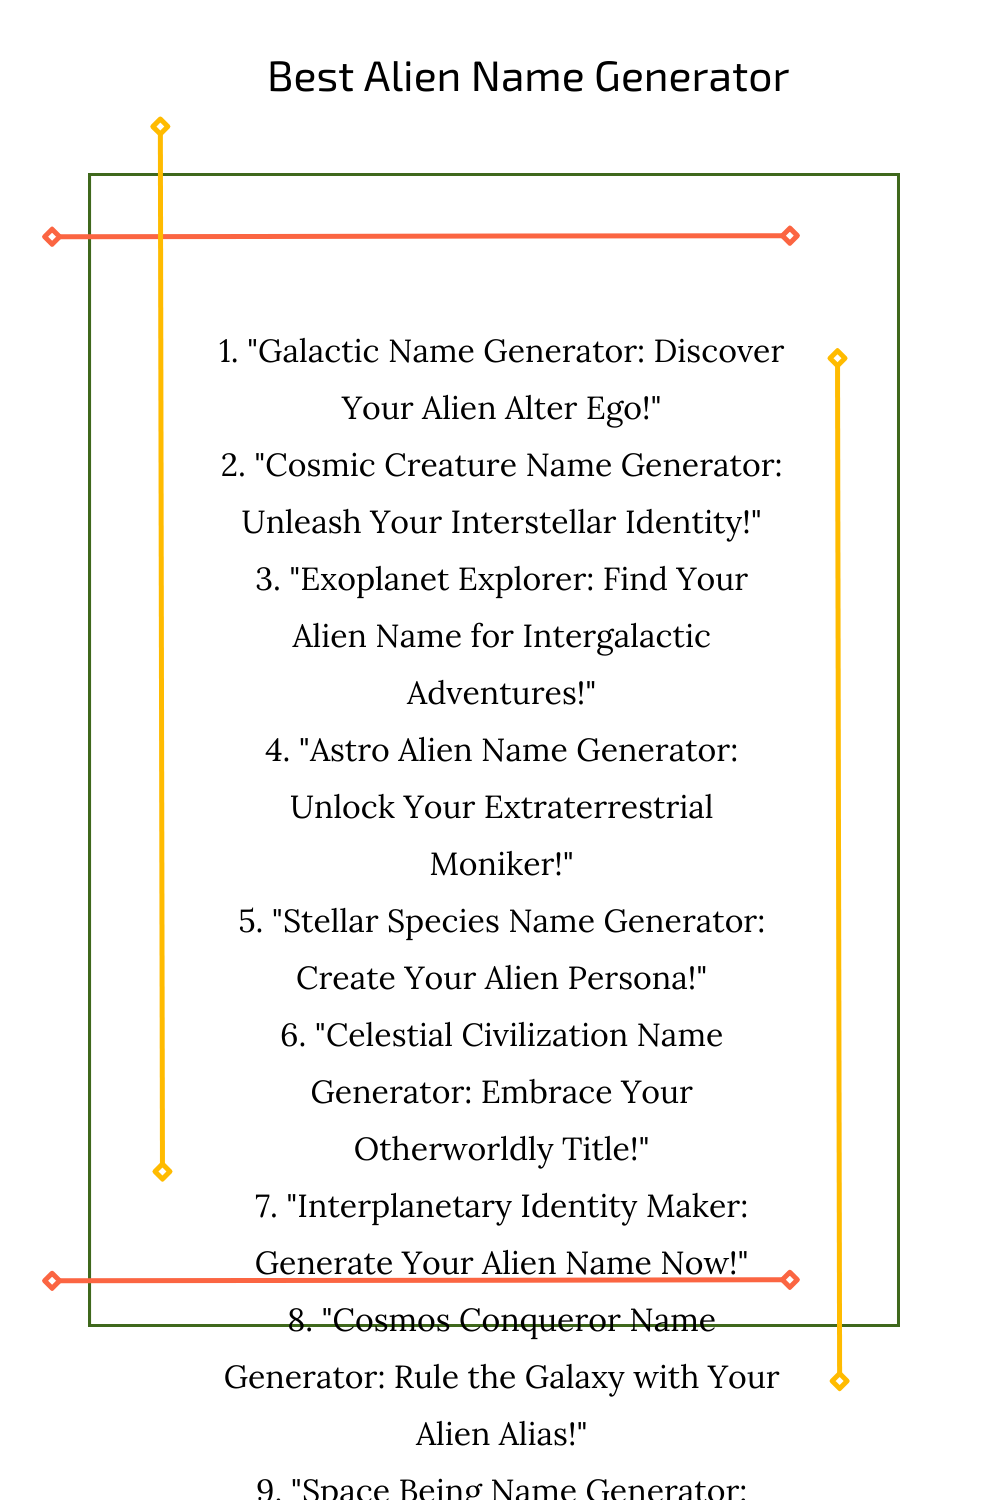 Best Alien Name Generator